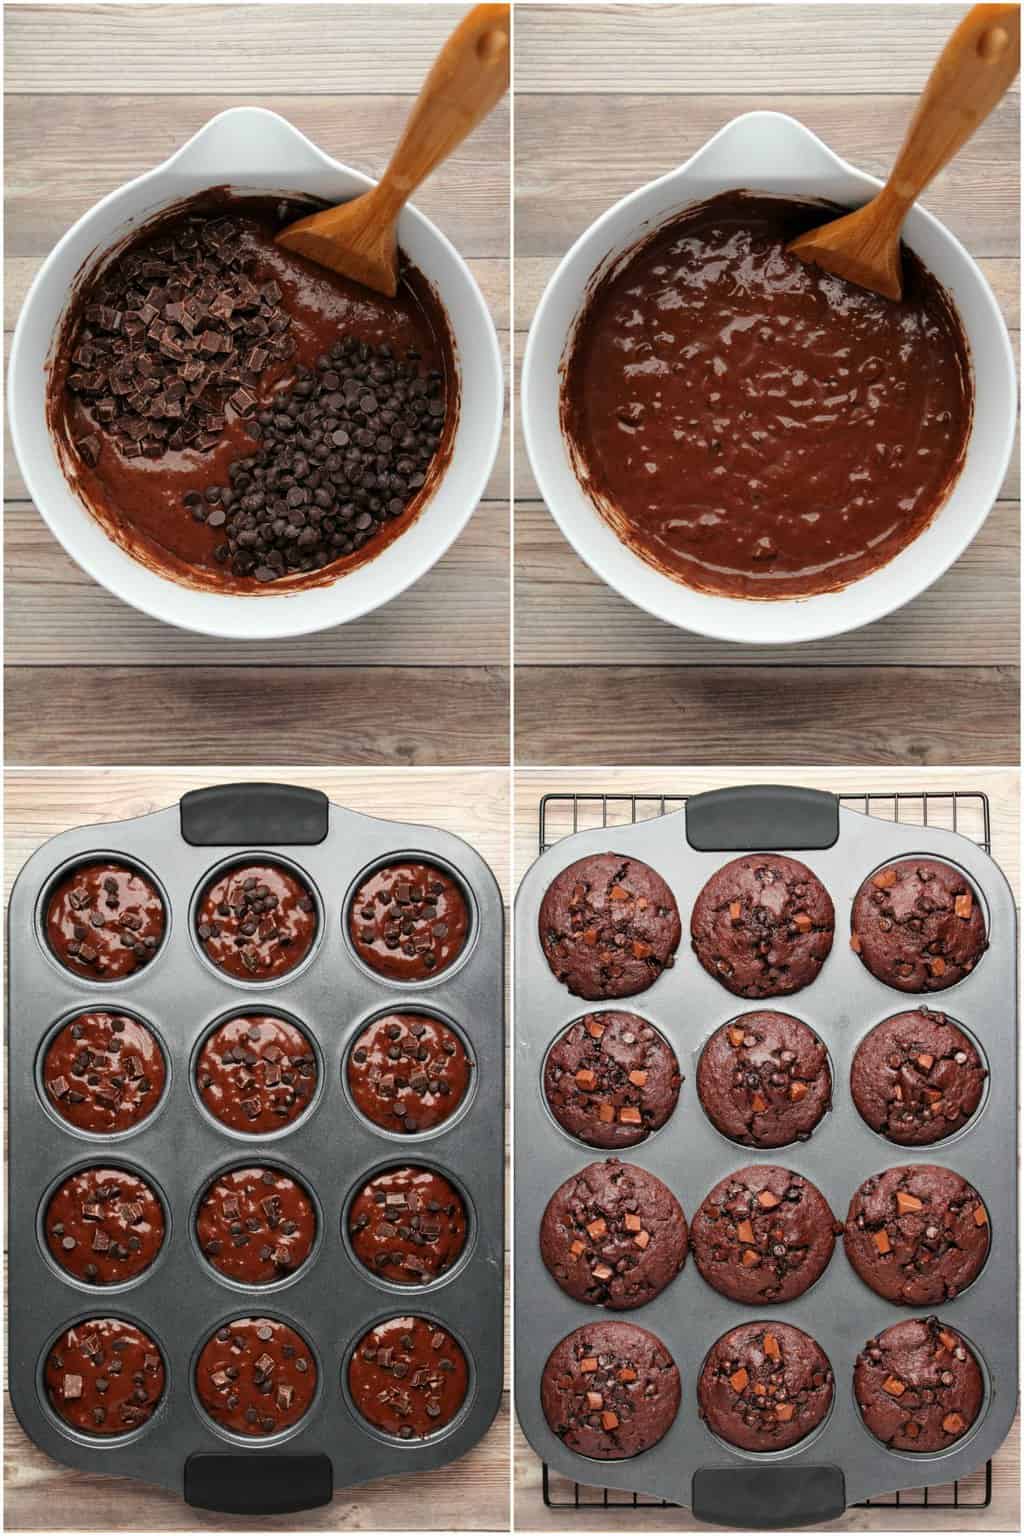  Schritt für Schritt Prozess Fotocollage zur Herstellung von veganen Schokoladenmuffins mit doppelter Schokolade. 